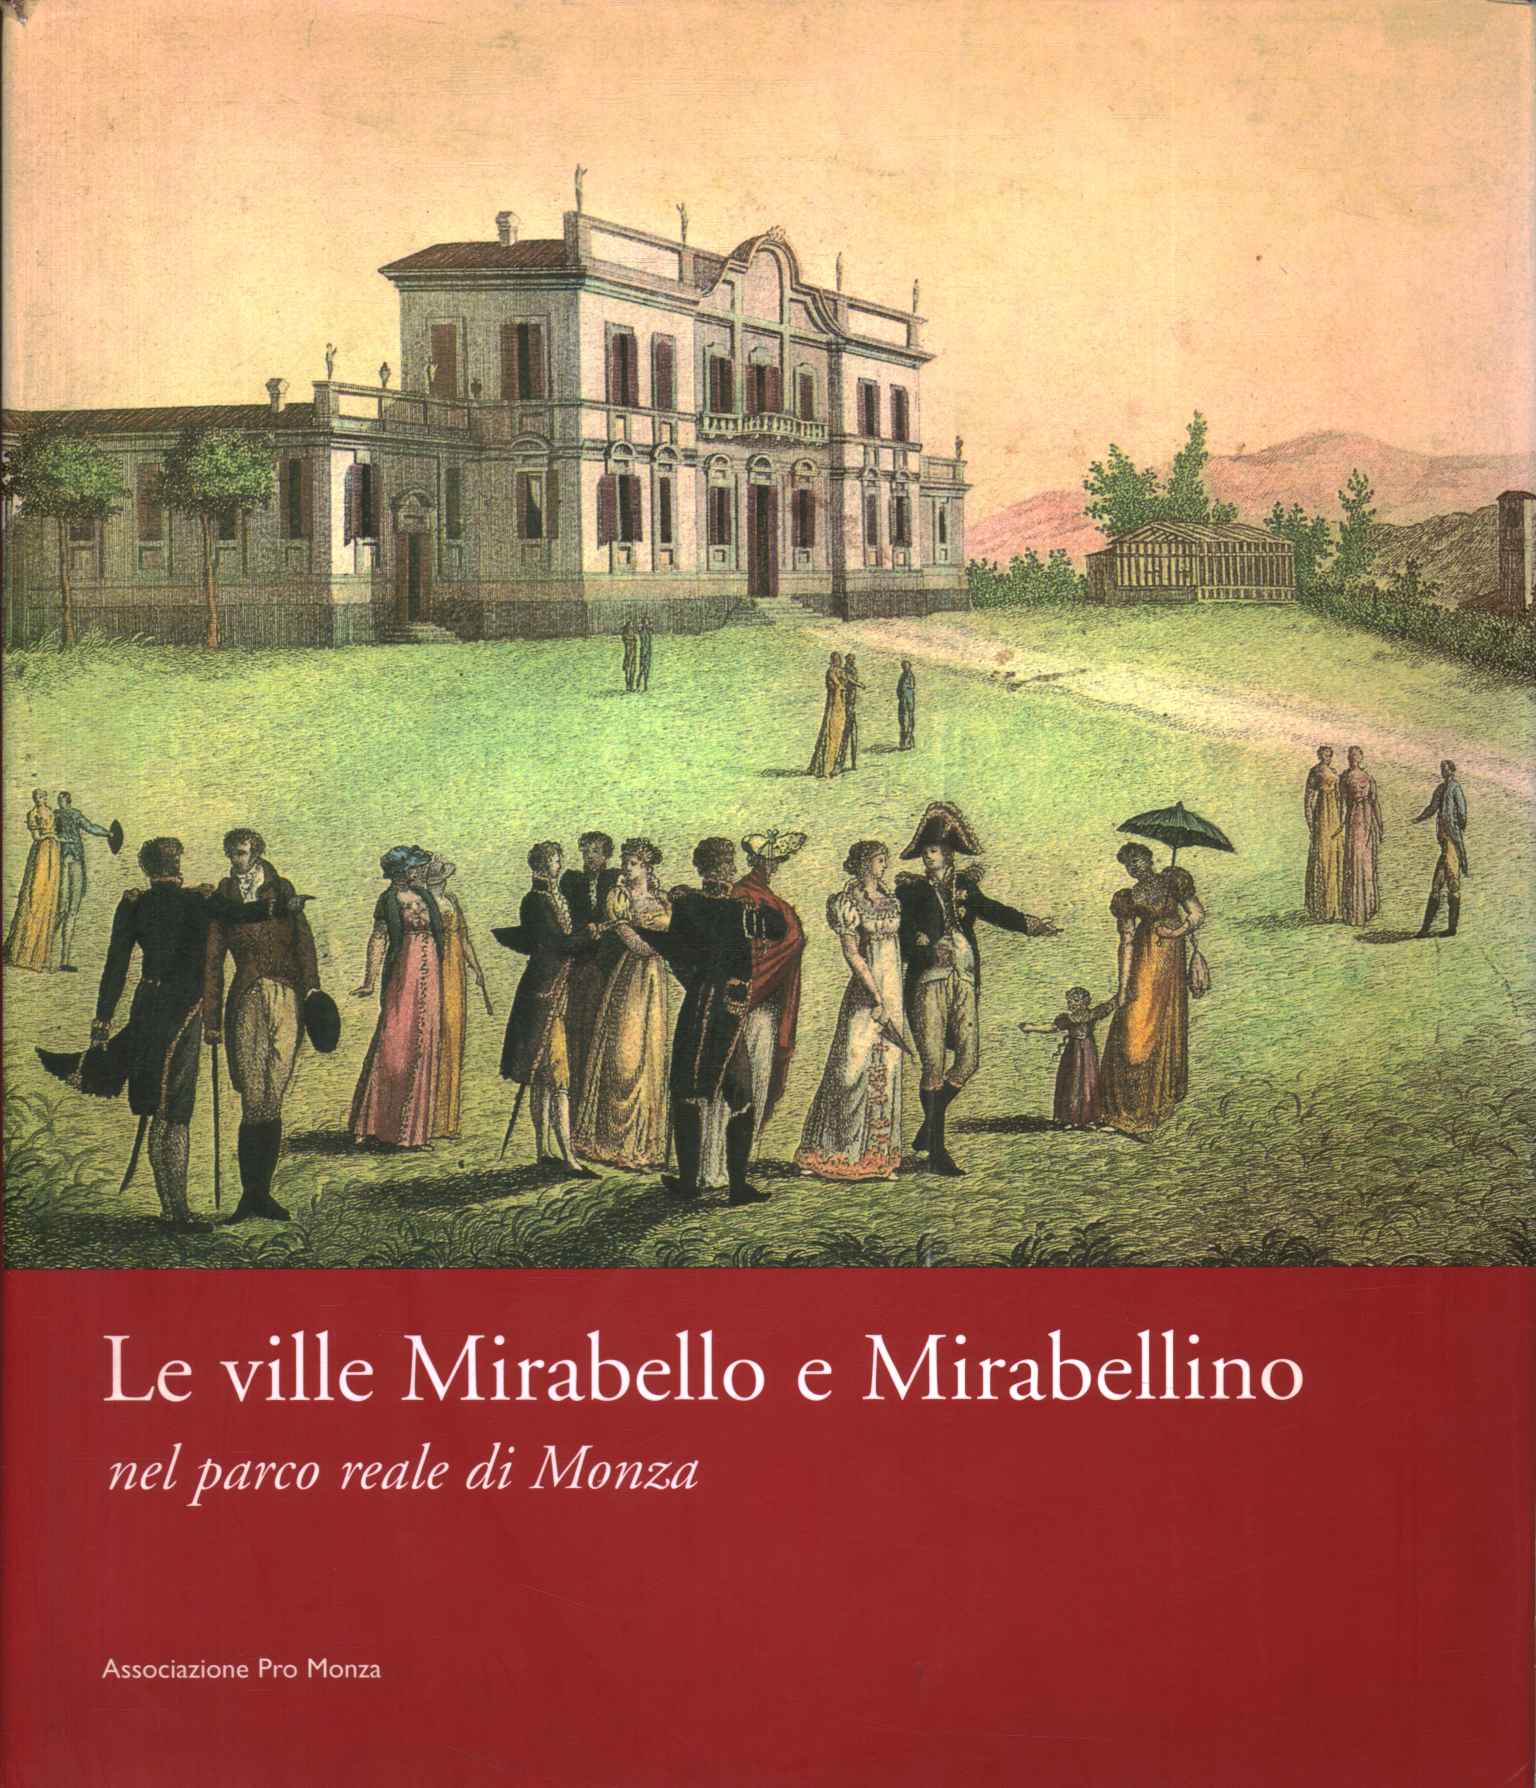 The Mirabello and Mirabellino villas